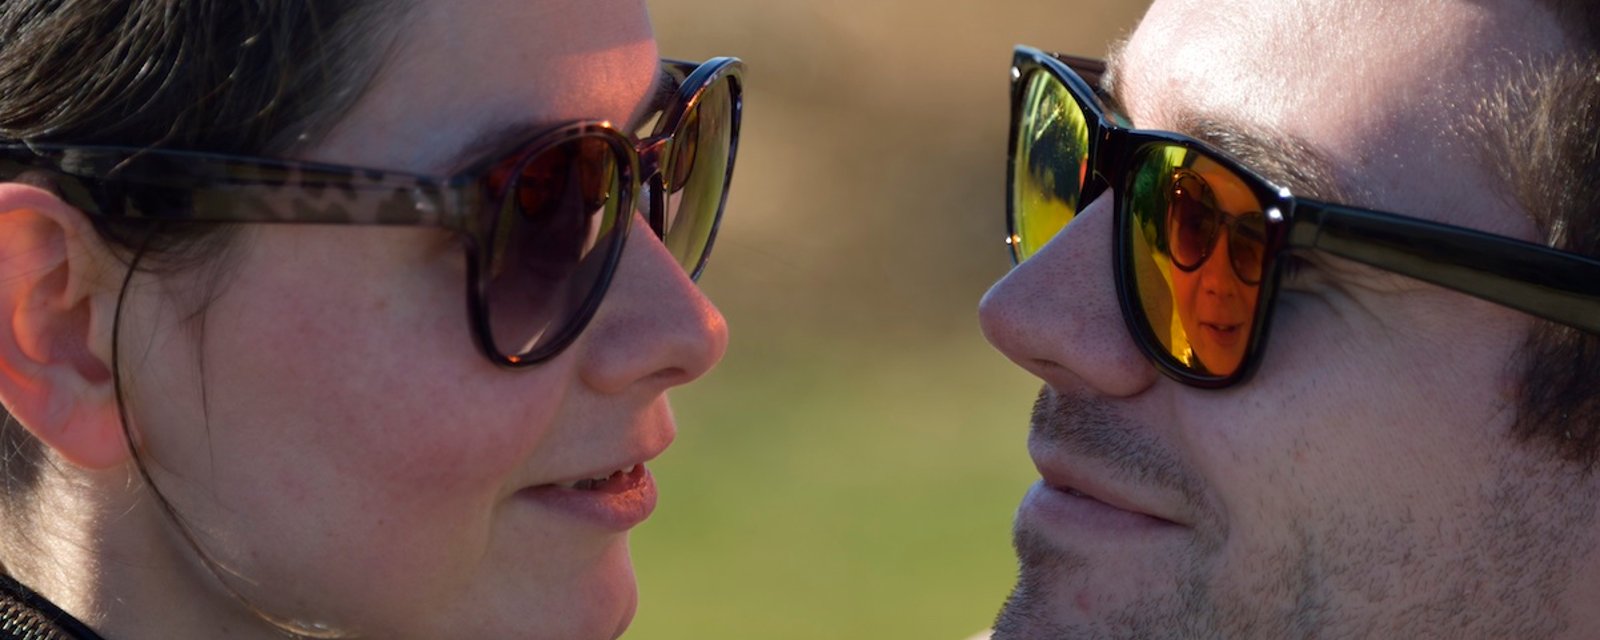 La science le confirme: l'amour rend réellement aveugle